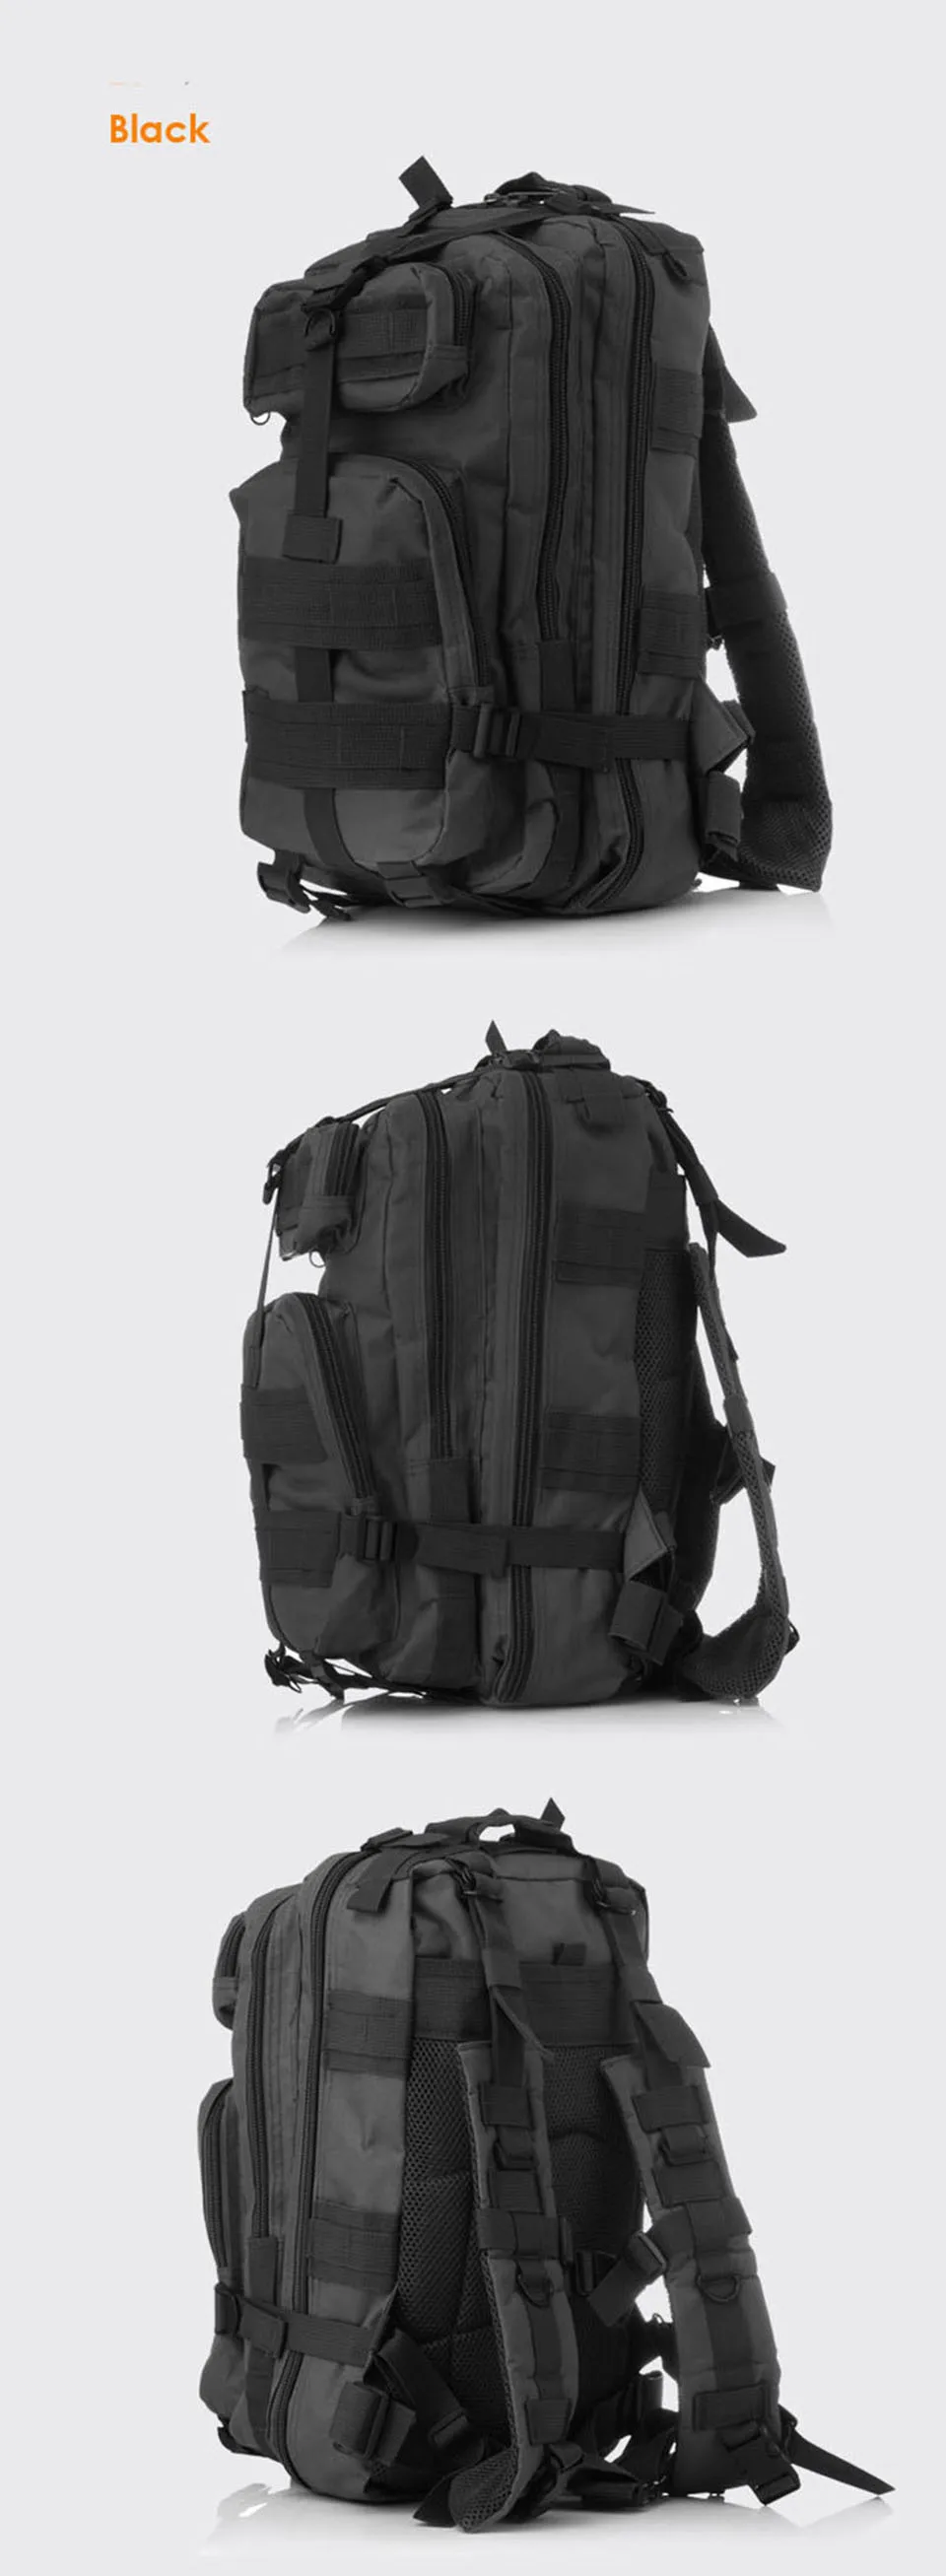 Для мужчин и женщин Открытый военный армейский тактический рюкзак Треккинг Спорт Путешествия Рюкзаки Кемпинг Туризм военно-спортивный камуфляж сумка